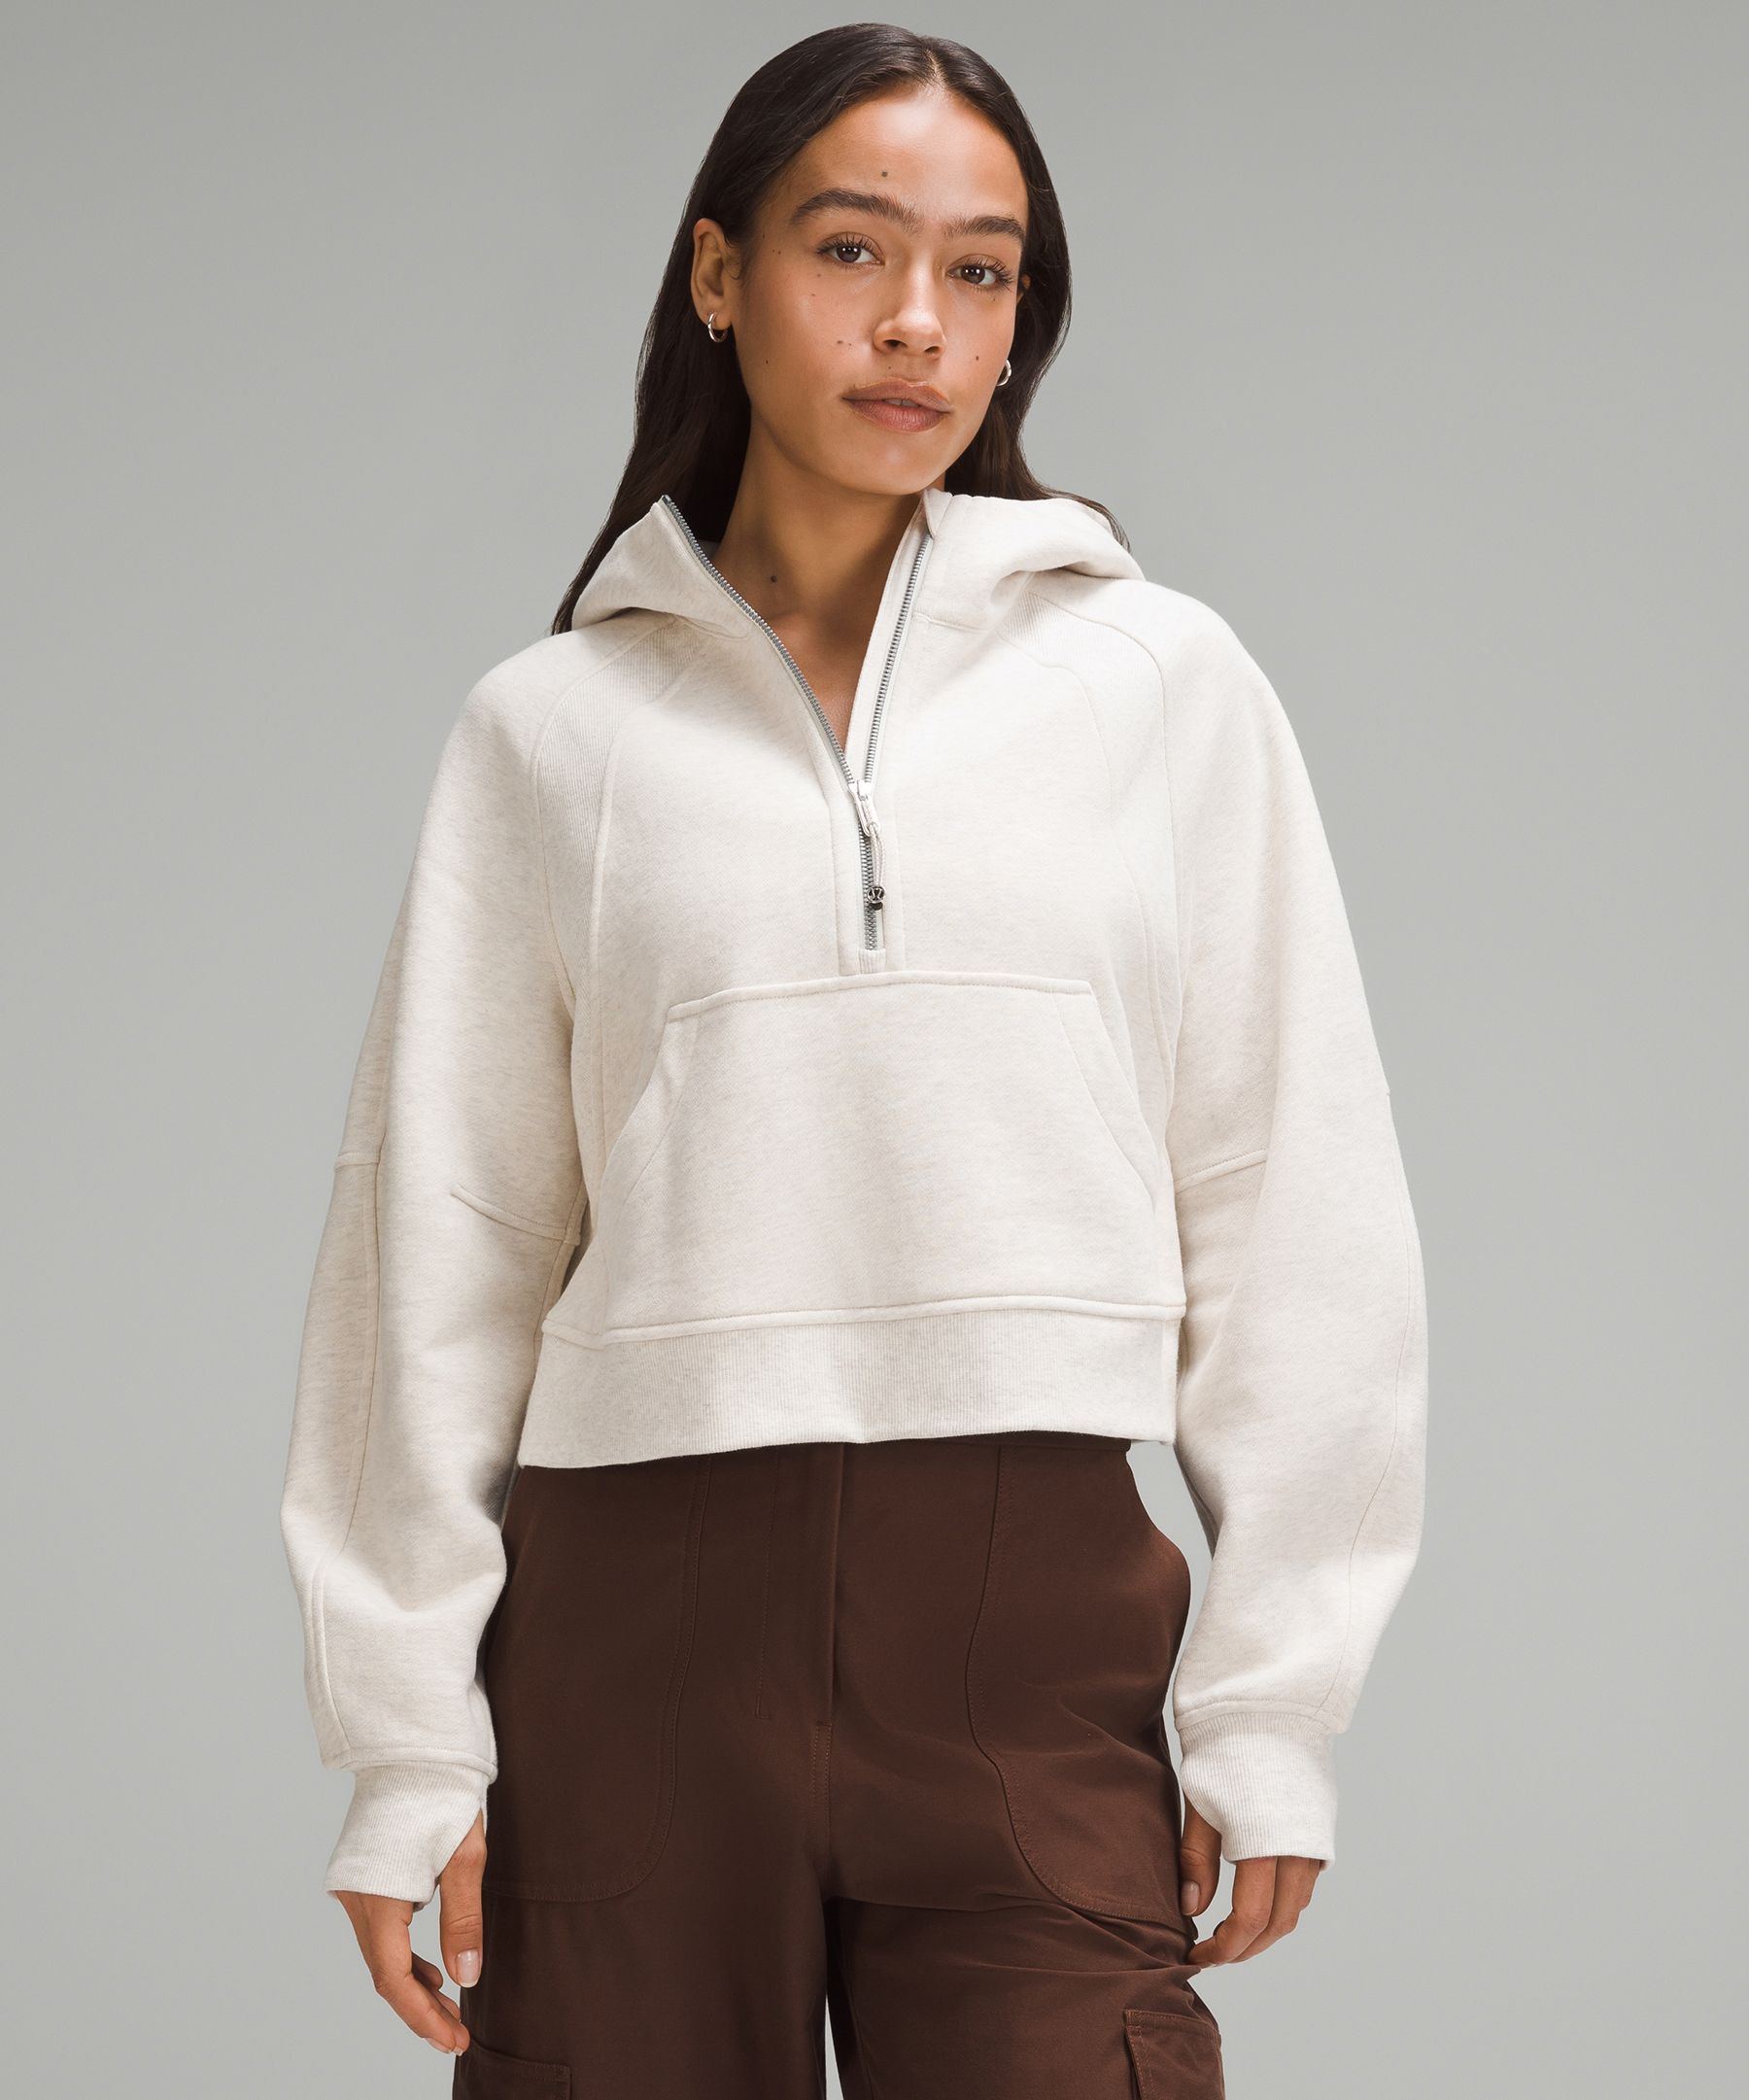 Lulu Scuba Half Zip Tech Fleece Hoodie Designer Cropped Top